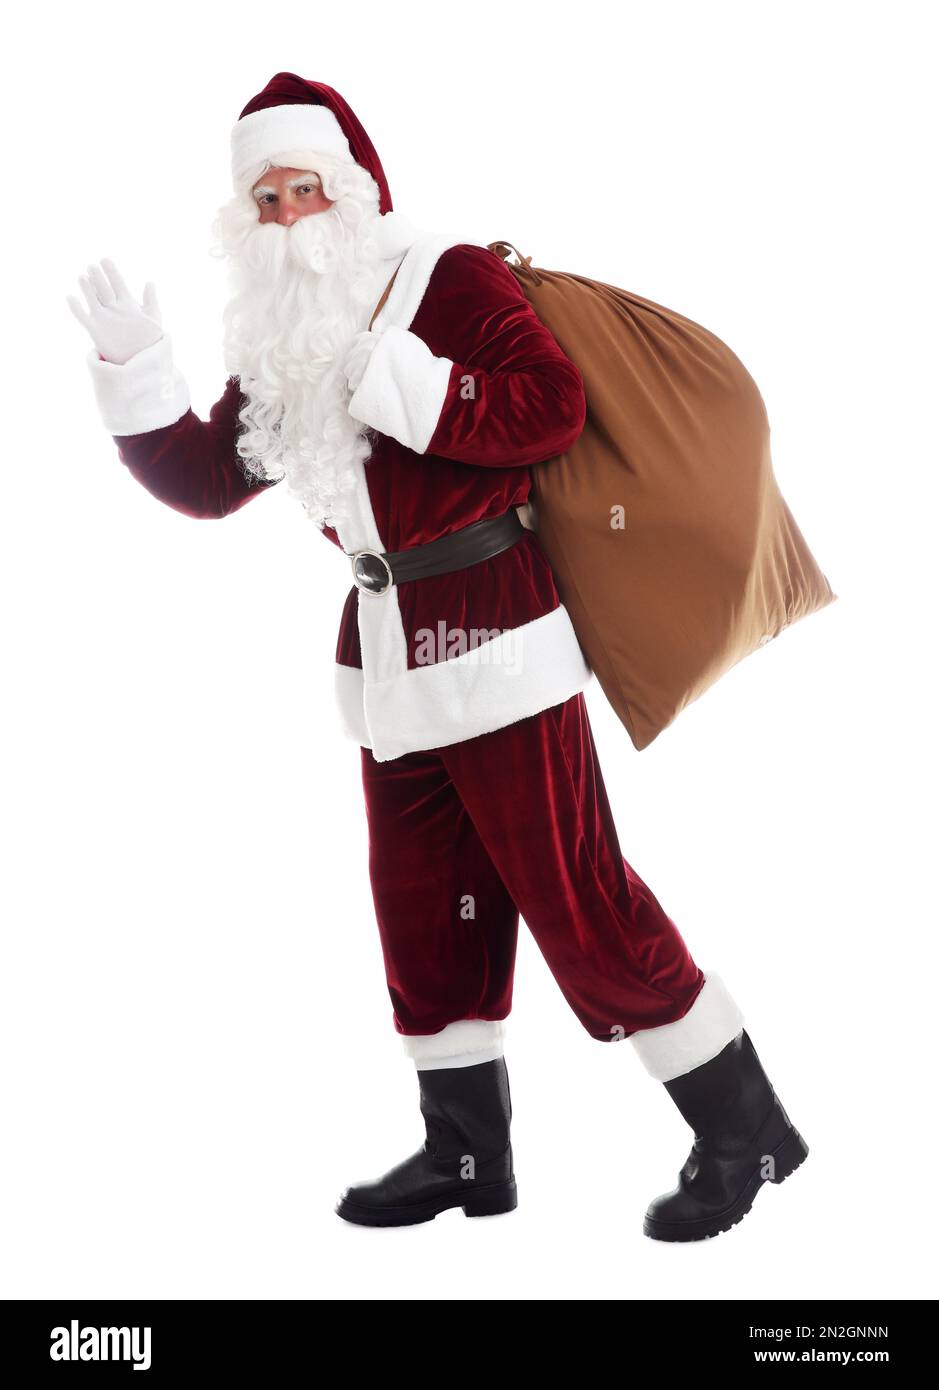 Santa Claus with sack walking on white background Stock Photo